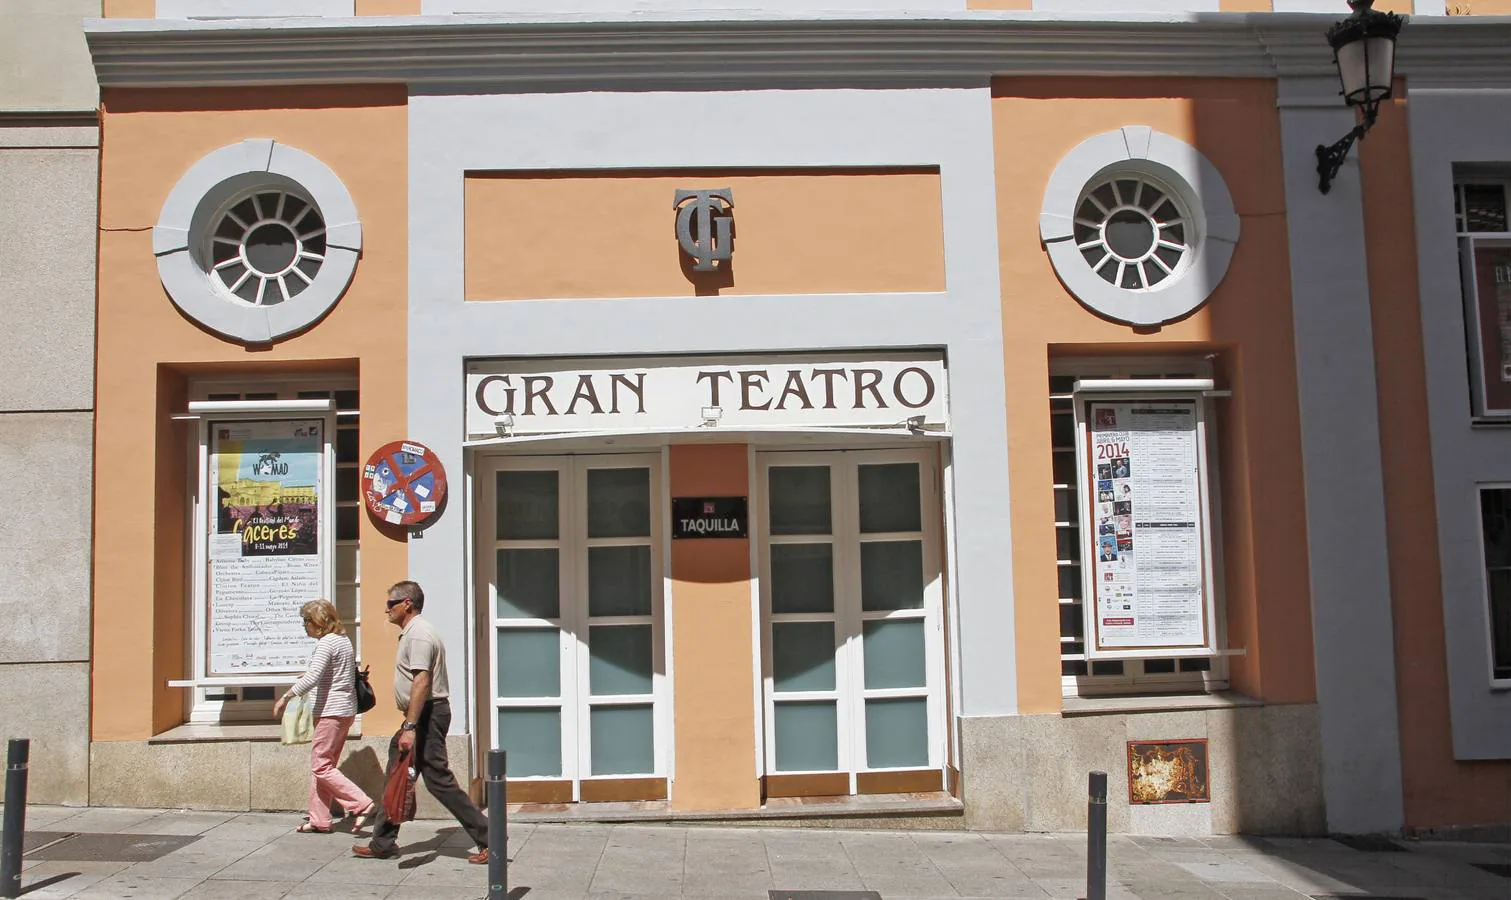 6-En el Gran Teatro había cuatro palcos altos reservado para prostitutas